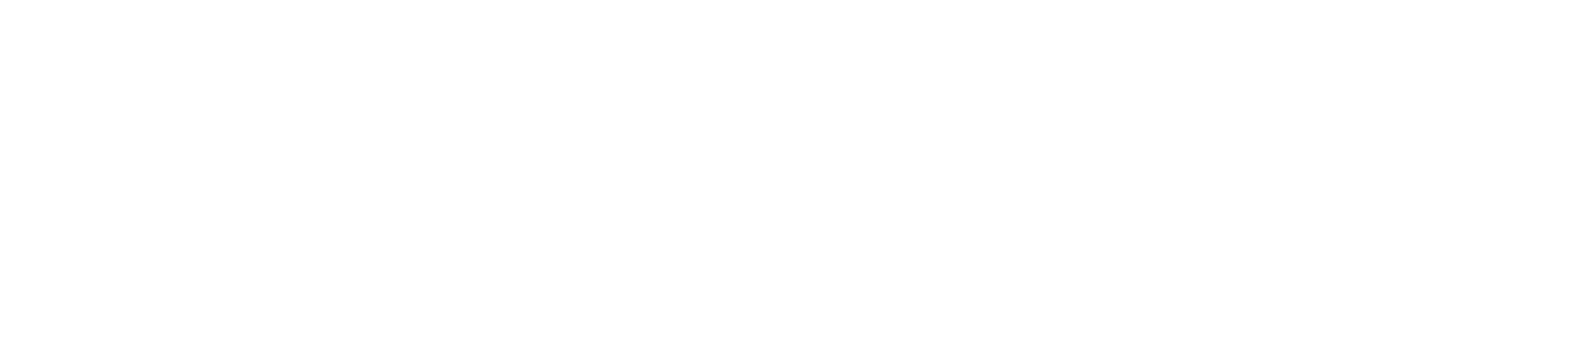 Eutelsat logo large for dark backgrounds (transparent PNG)